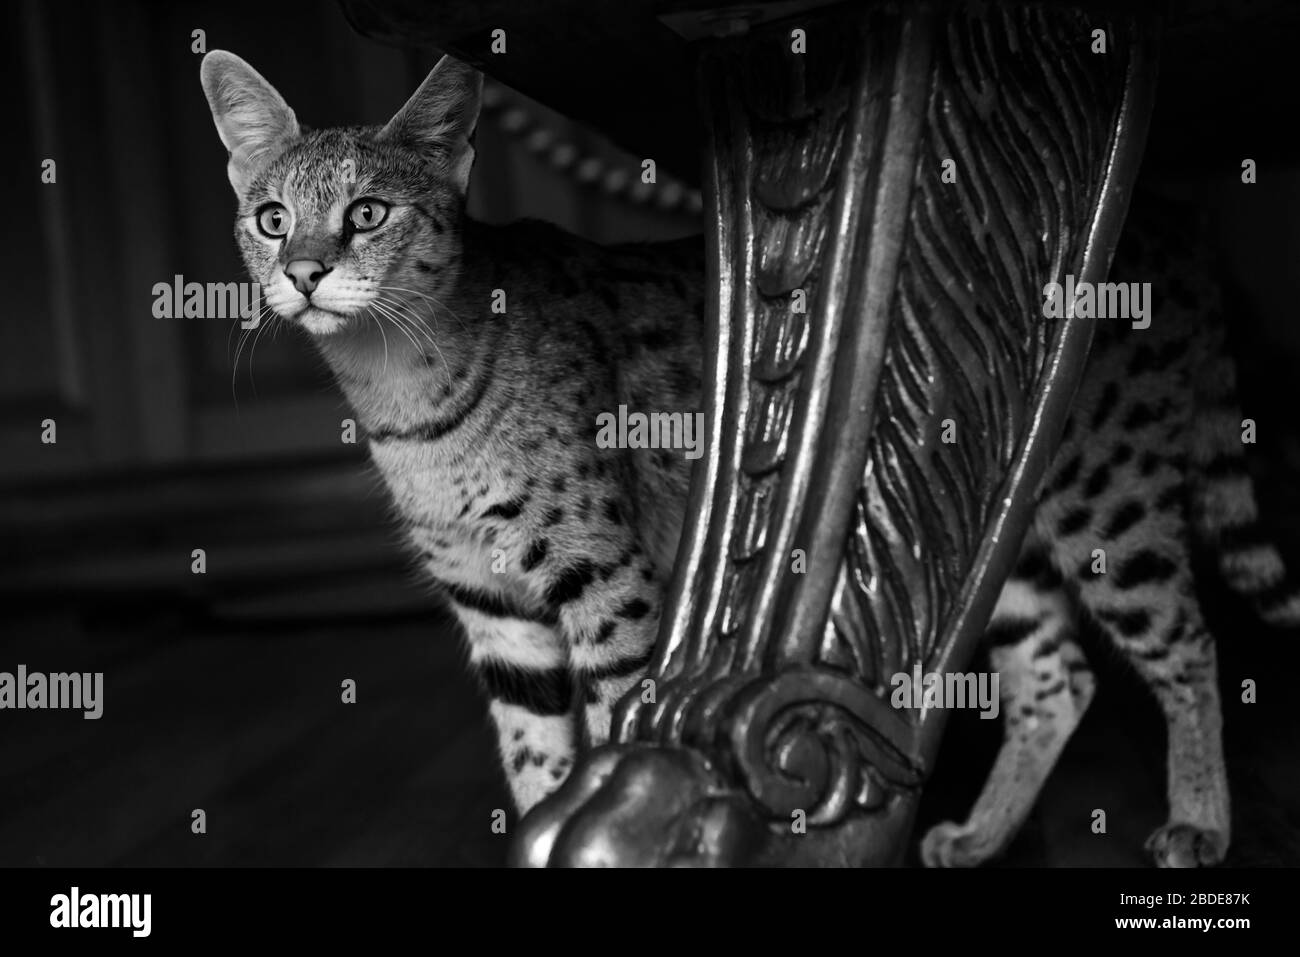 Savannah cat Stock Photo